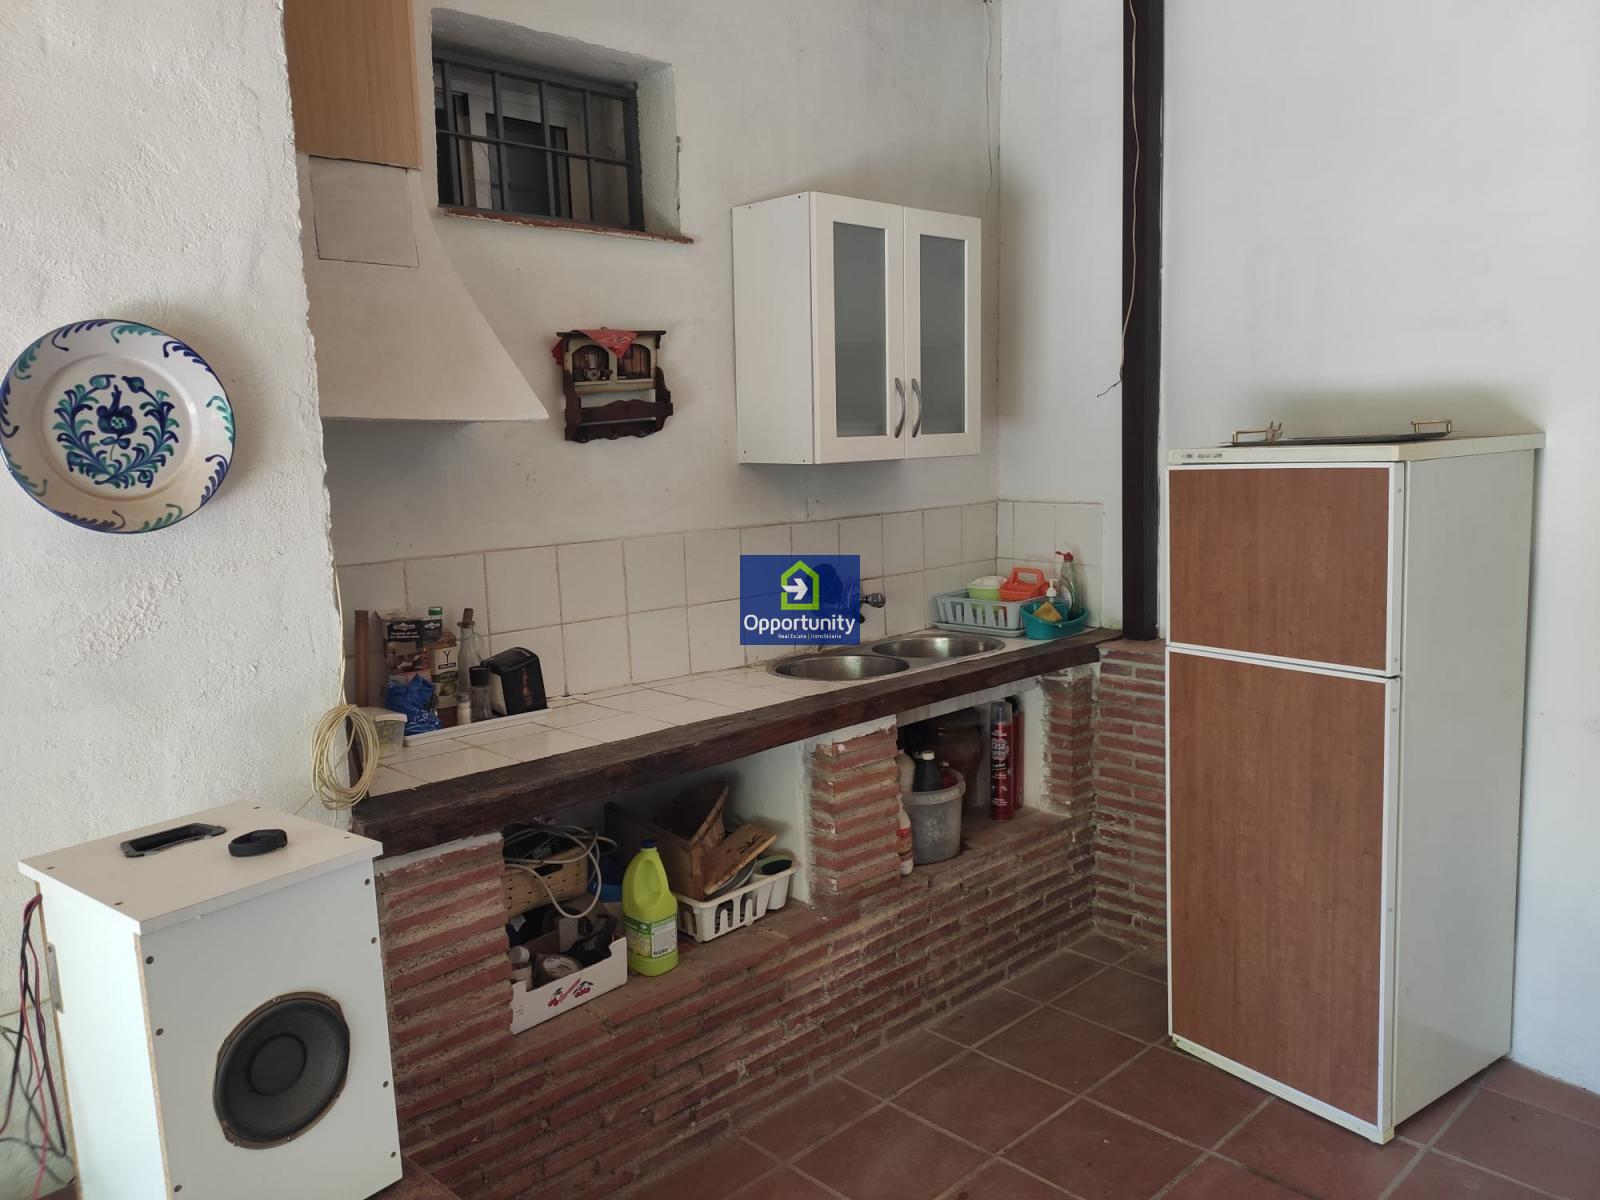 Rodinný dům v pronájmu v Cerrillo de Maracena (Granada), 750€/ měsíc (Sezóna)